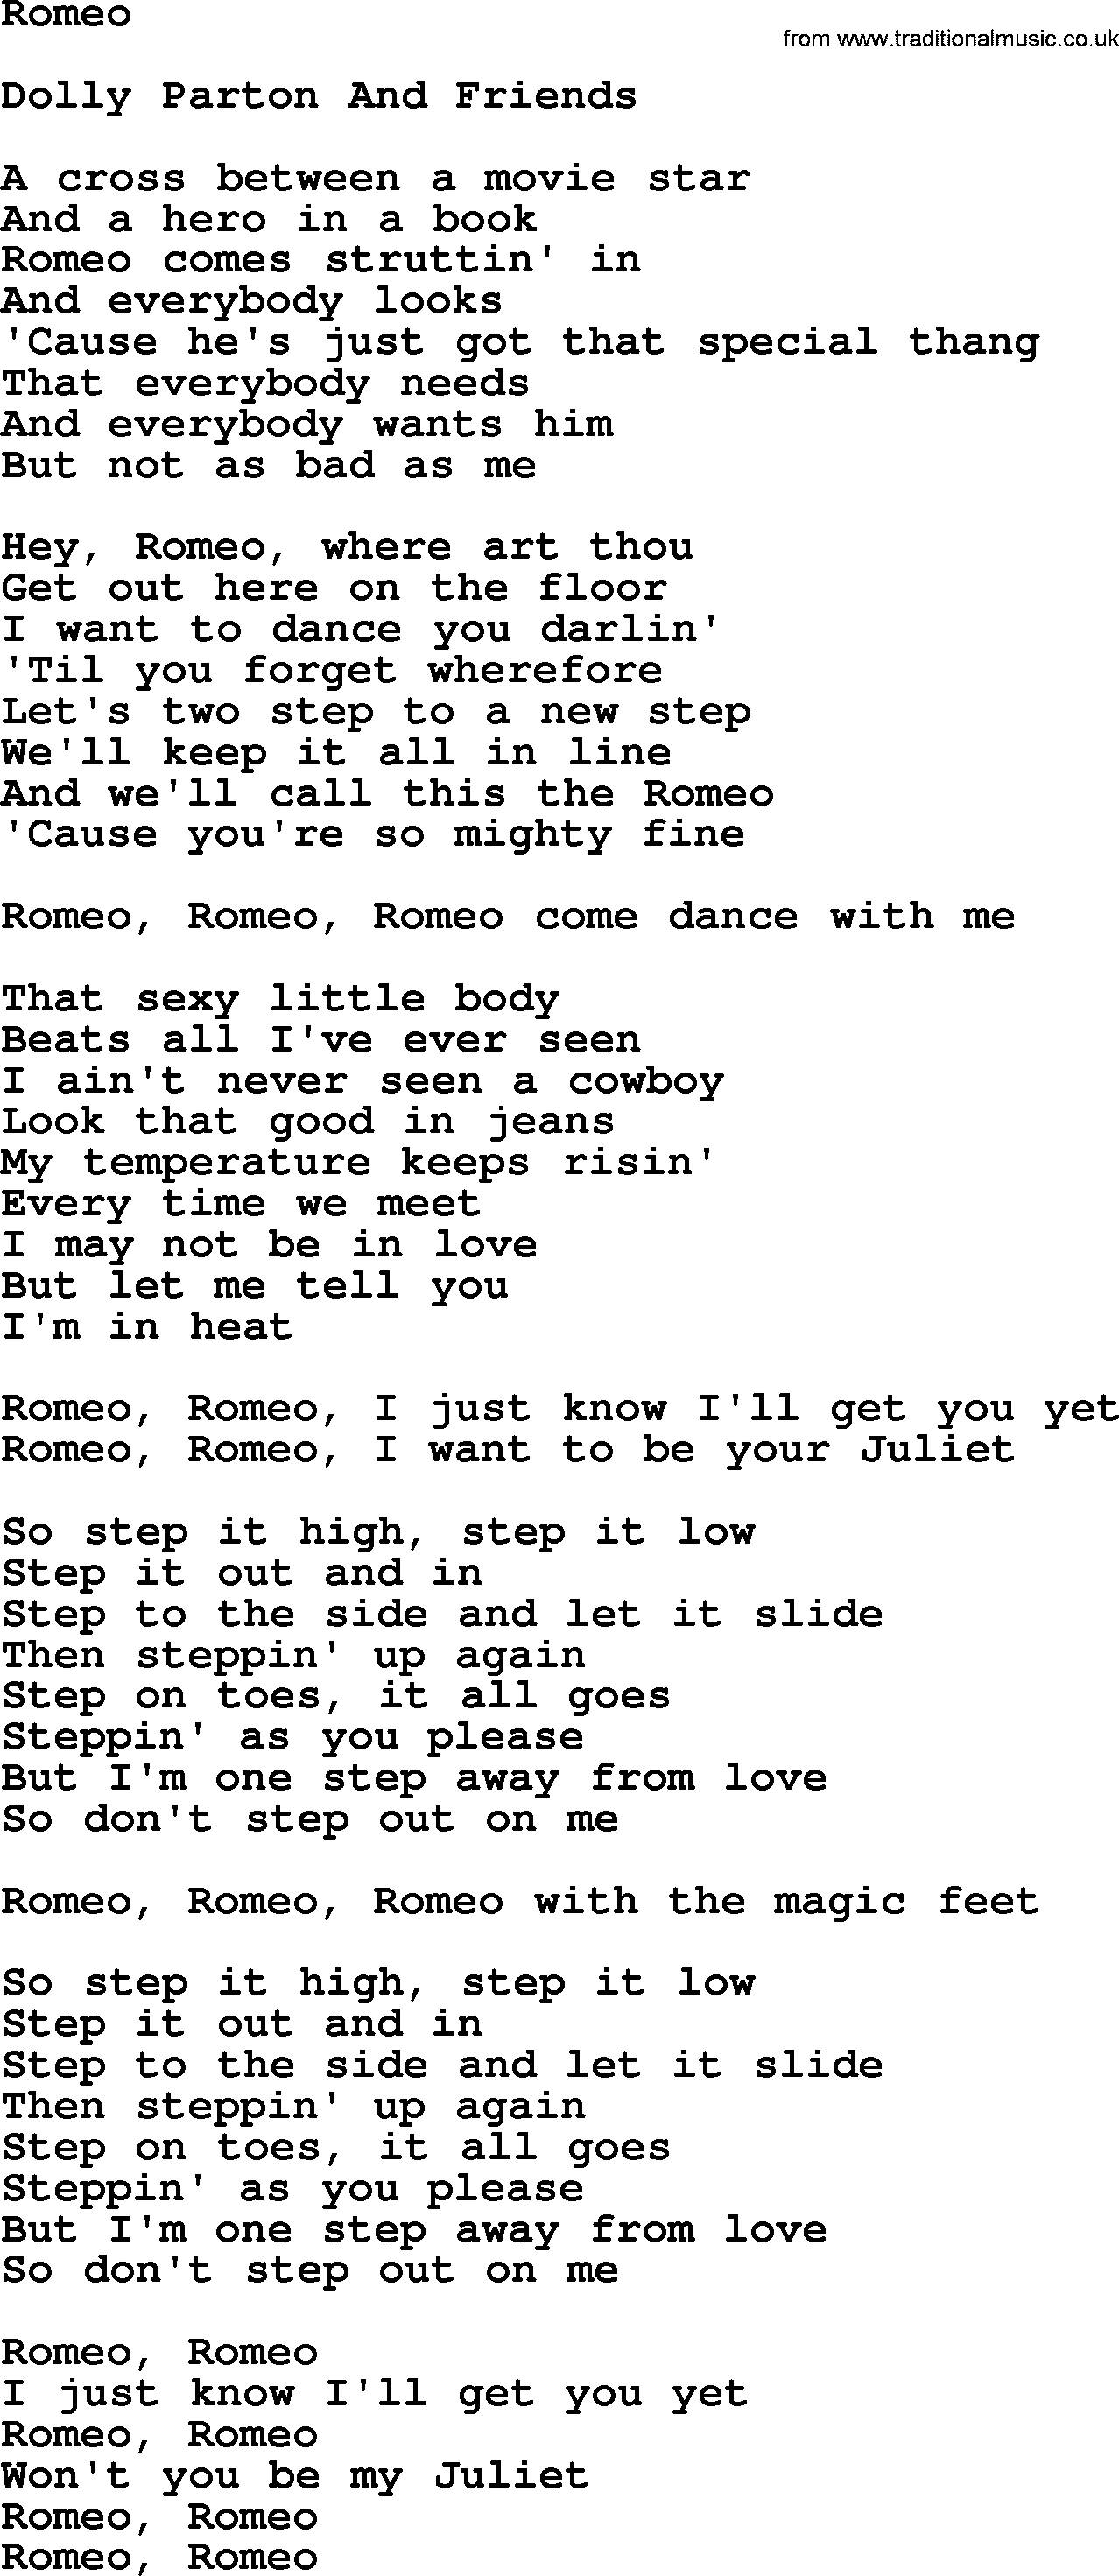 Dolly Parton song Romeo.txt lyrics